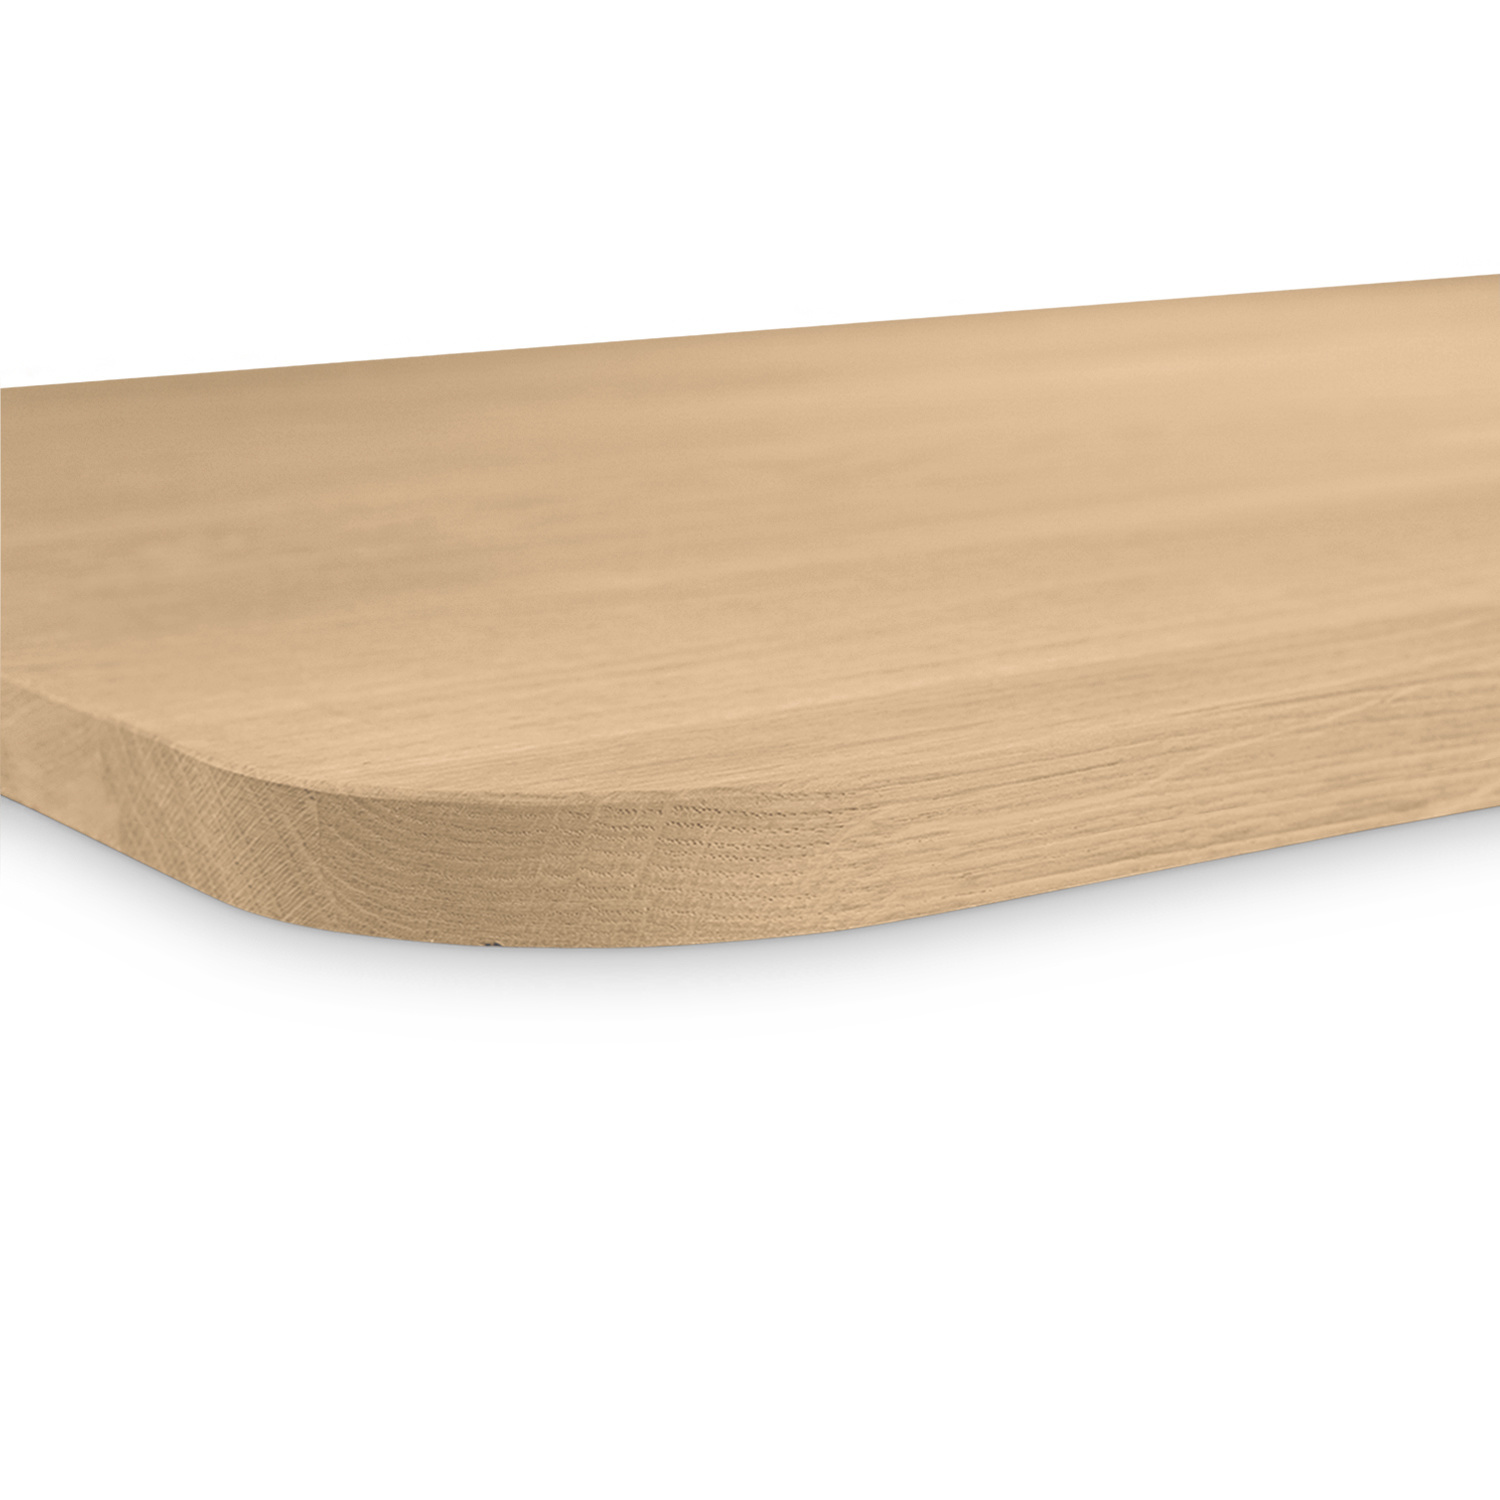  Tischplatte Eiche - mit runden Ecken - 2,7 cm dick (1-Schicht) - Breite Lamellen (10 - 12 cm breit) - Eichenholz A-Qualität - verleimt & künstlich getrocknet (HF 8-12%) - mit abgerundeten Kanten - verschiedene Größen